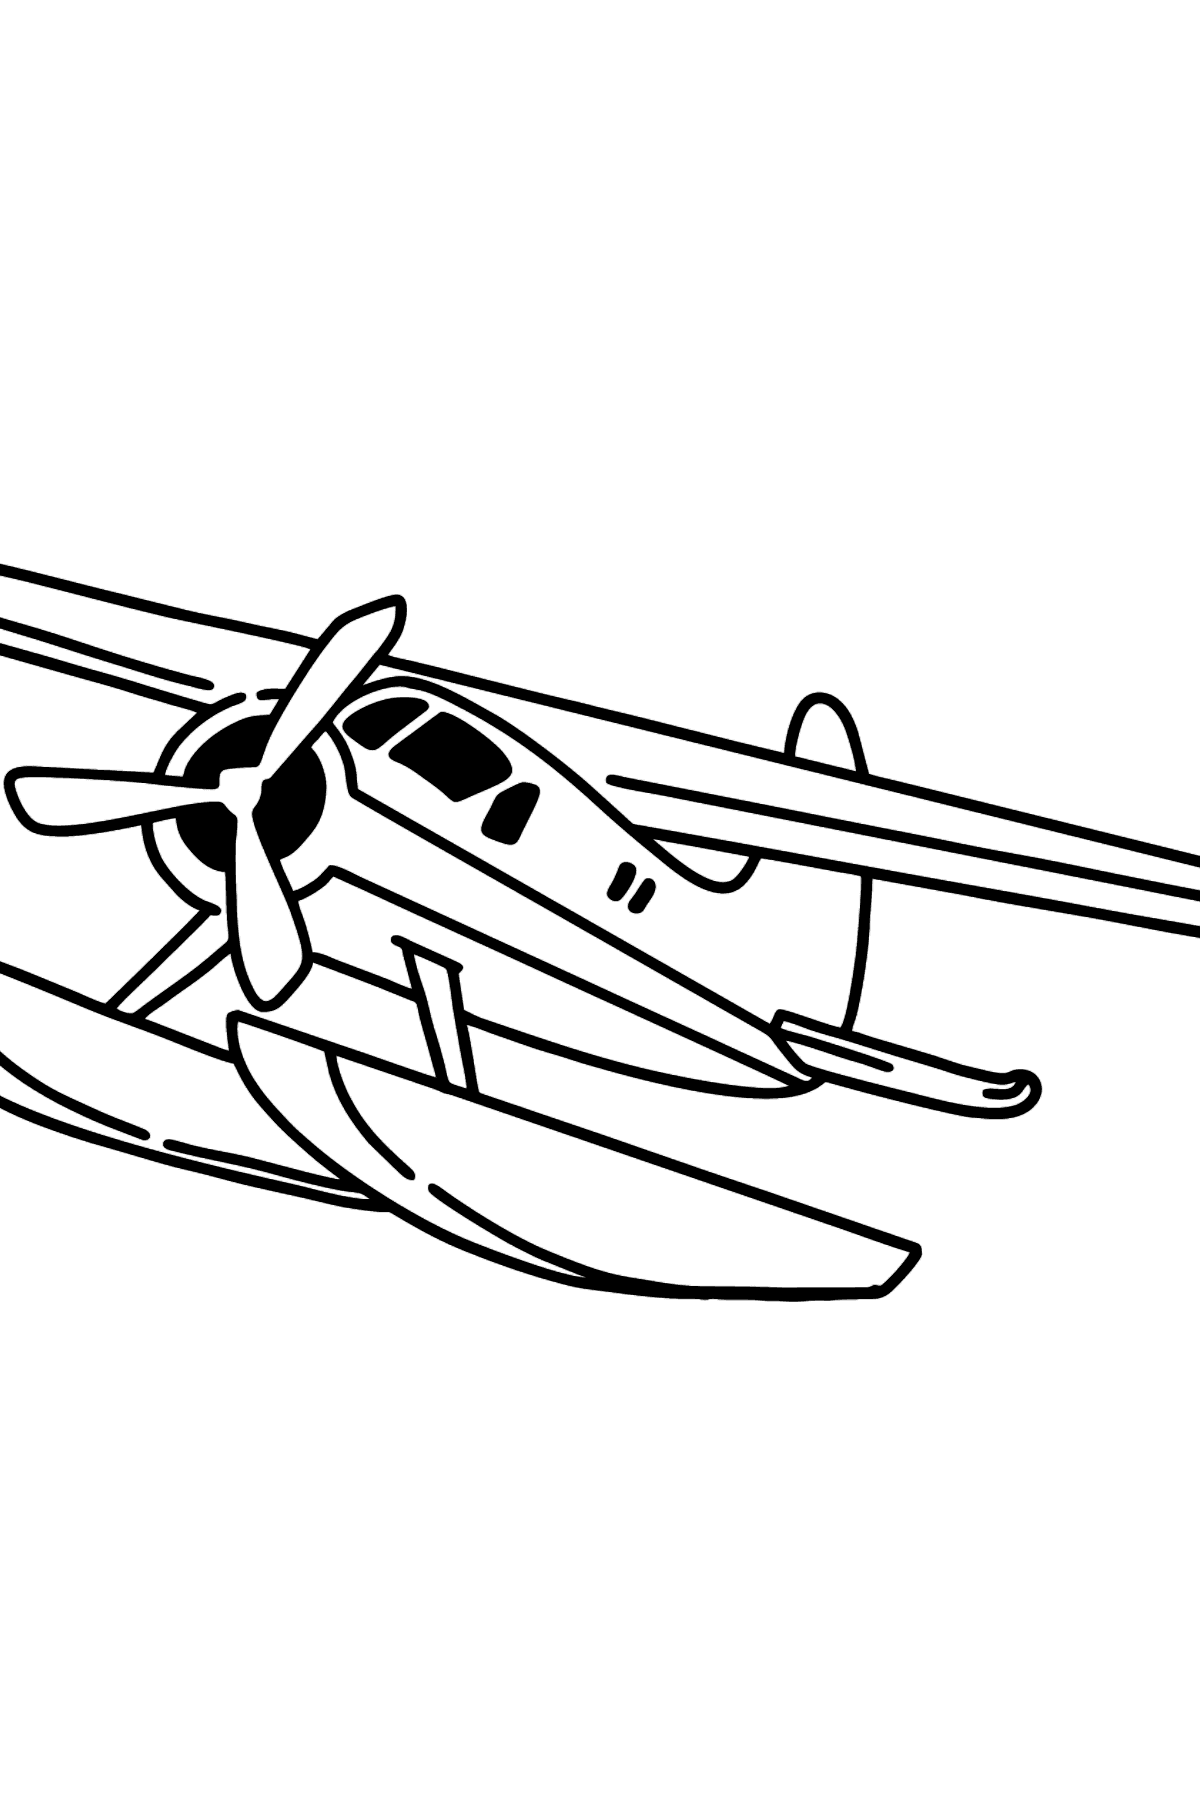 Desen de colorat avion cu reacție be-200 - Desene de colorat pentru copii